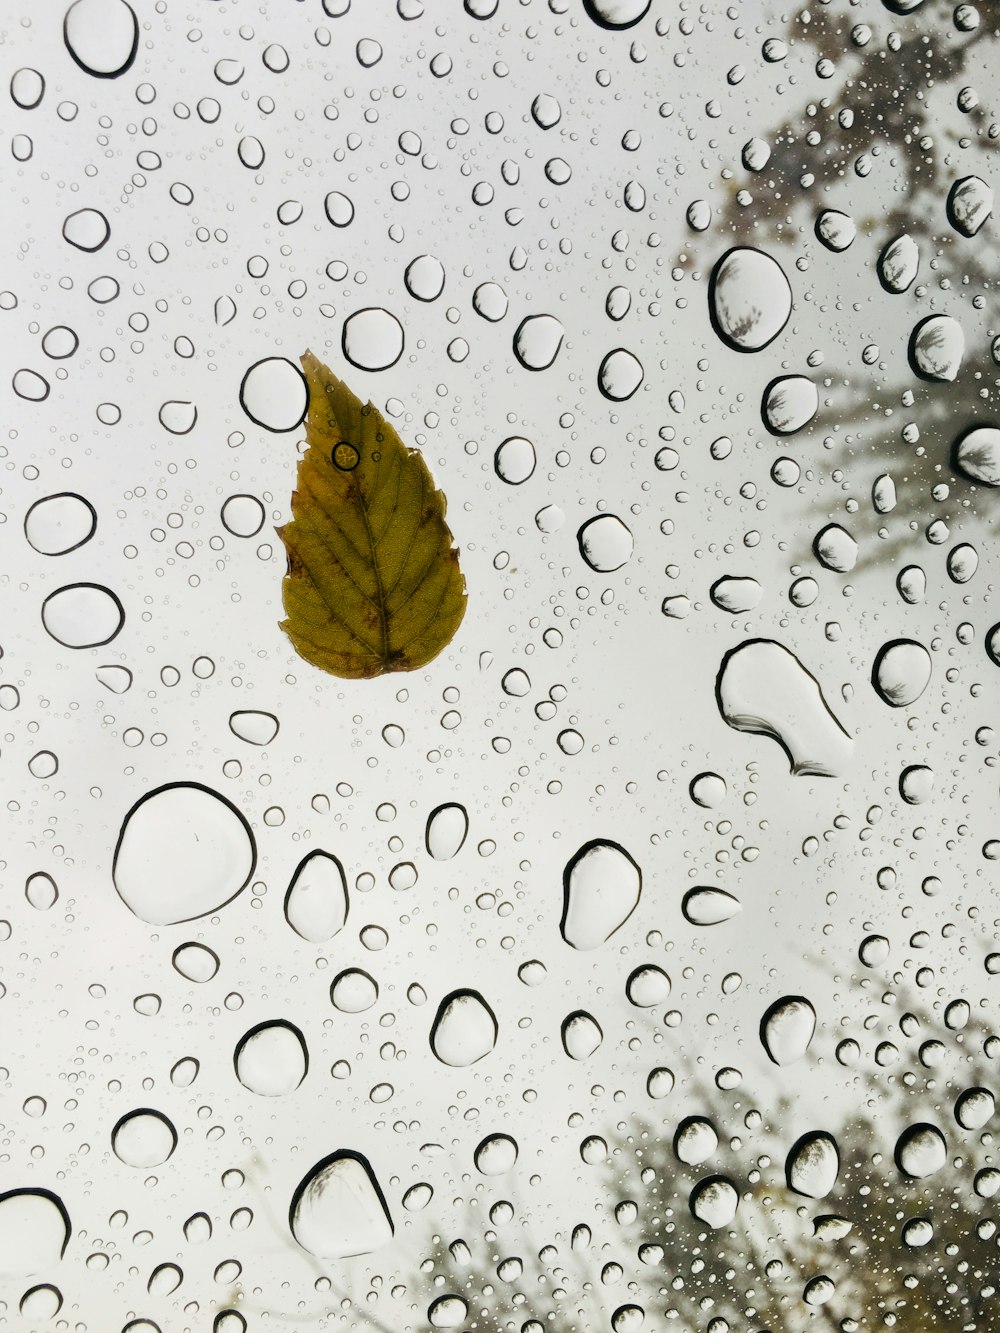 brown leaf on water droplets